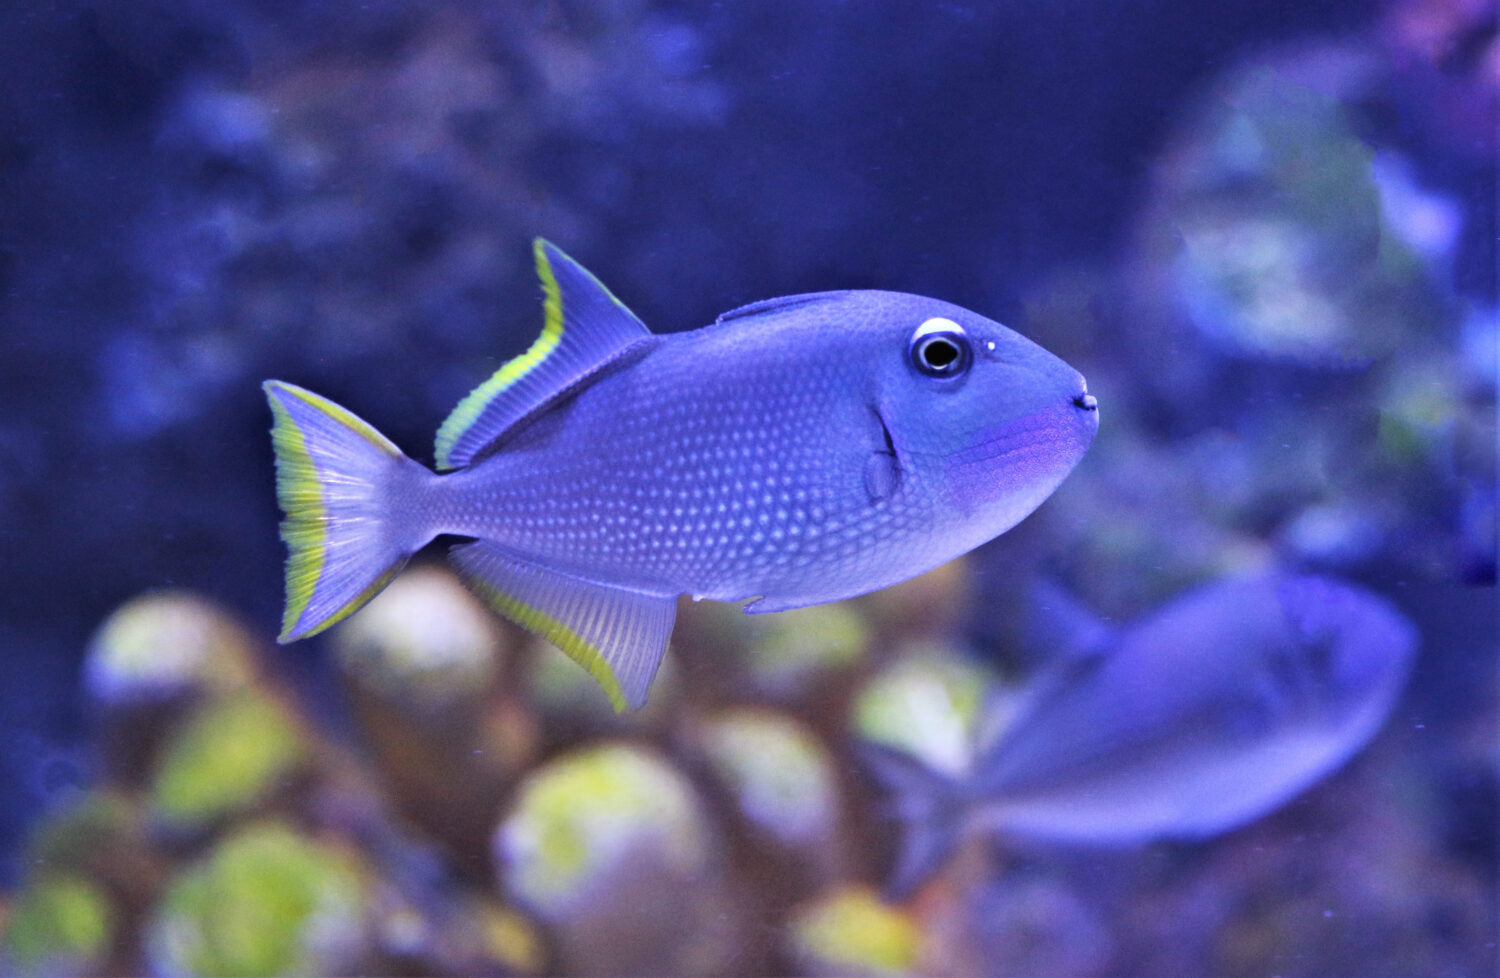 Il pesce balestra dorato, pesce balestra golaazzurra (Xanthichthys auromarginatus) è un pesce balestra grigio maculato, appartenente alla famiglia Balistidae.  Sta nuotando in un acquario marino.